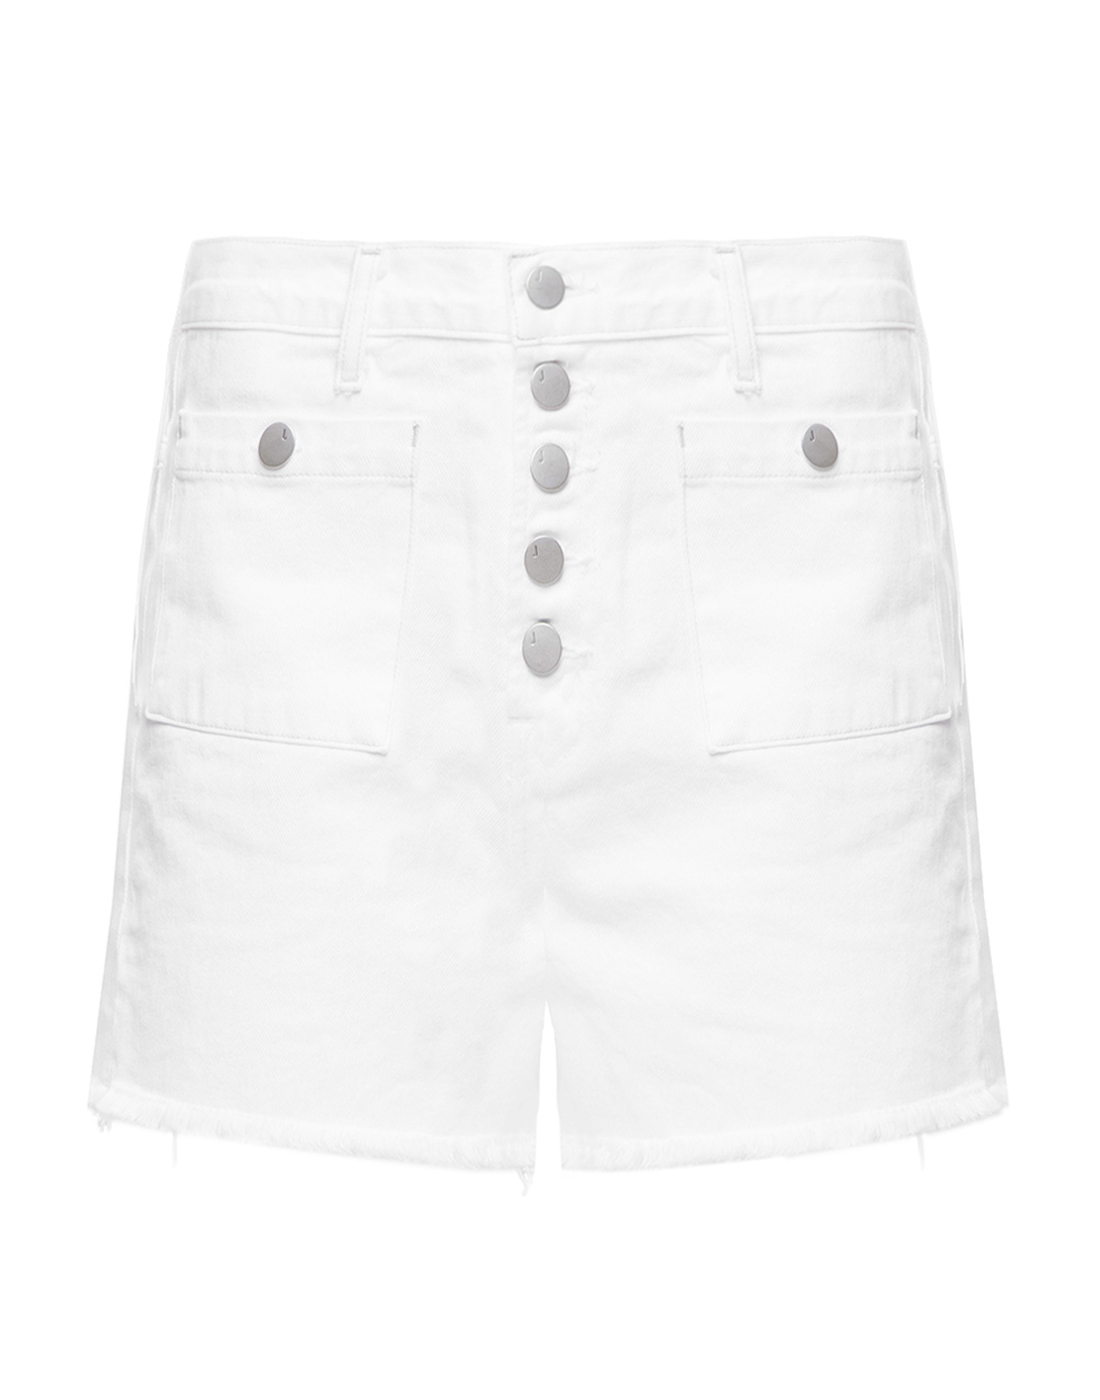 Женские белые джинсовые шорты J BRAND SJB002060-1